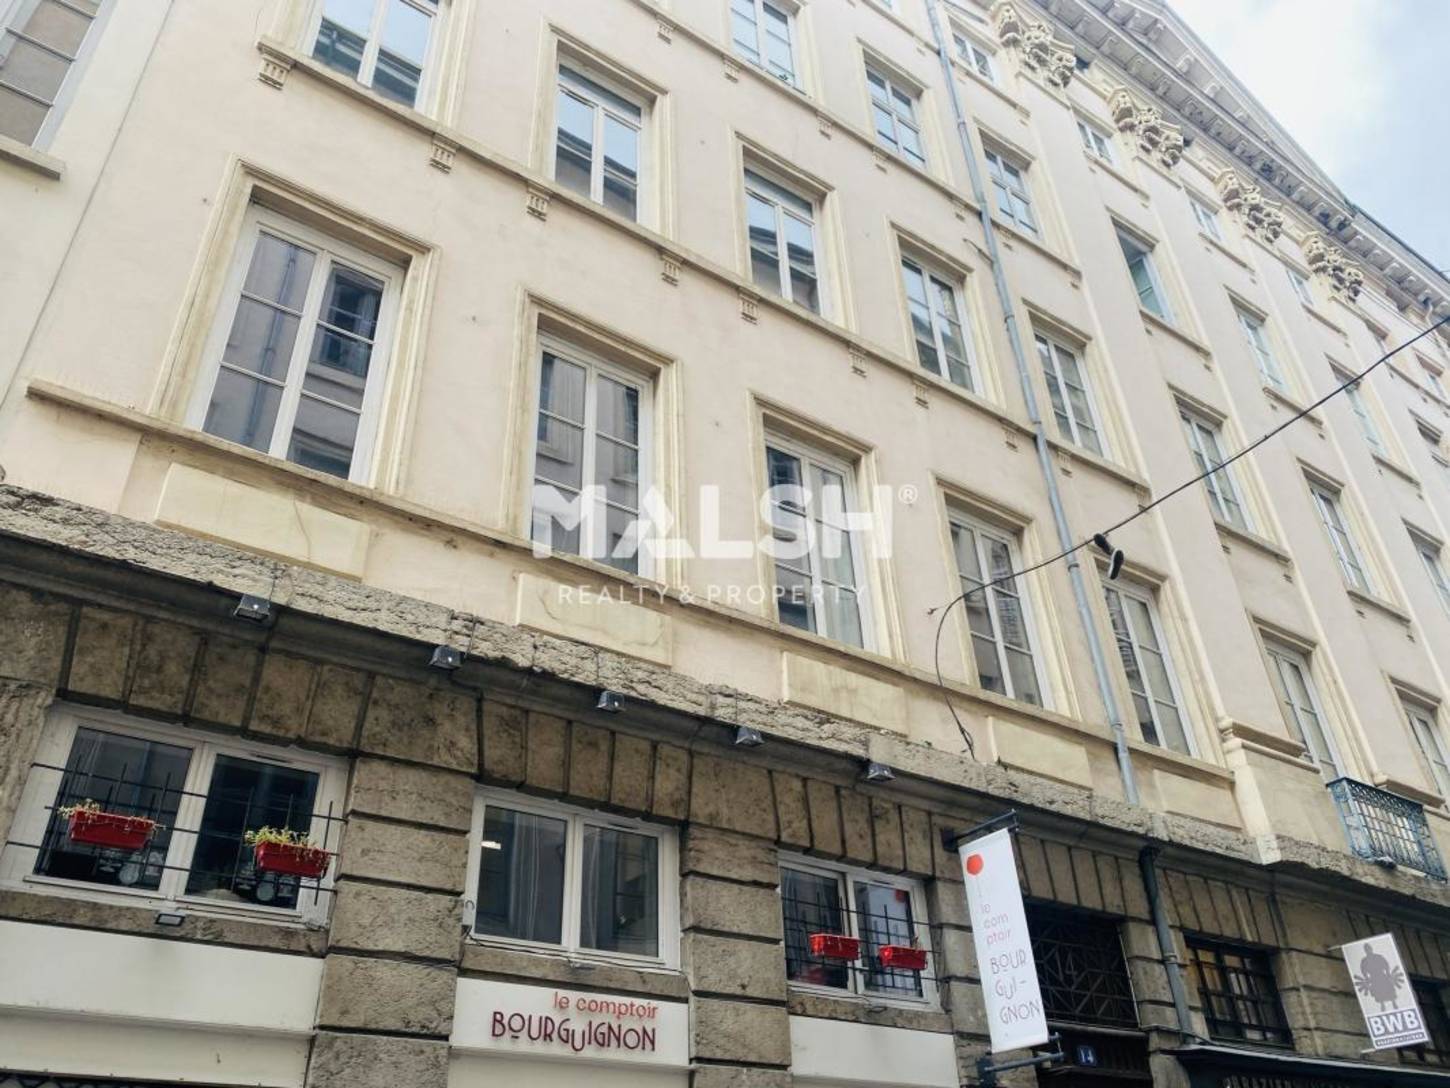 MALSH Realty & Property - Bureaux - Lyon 1 - Lyon 1 - 2